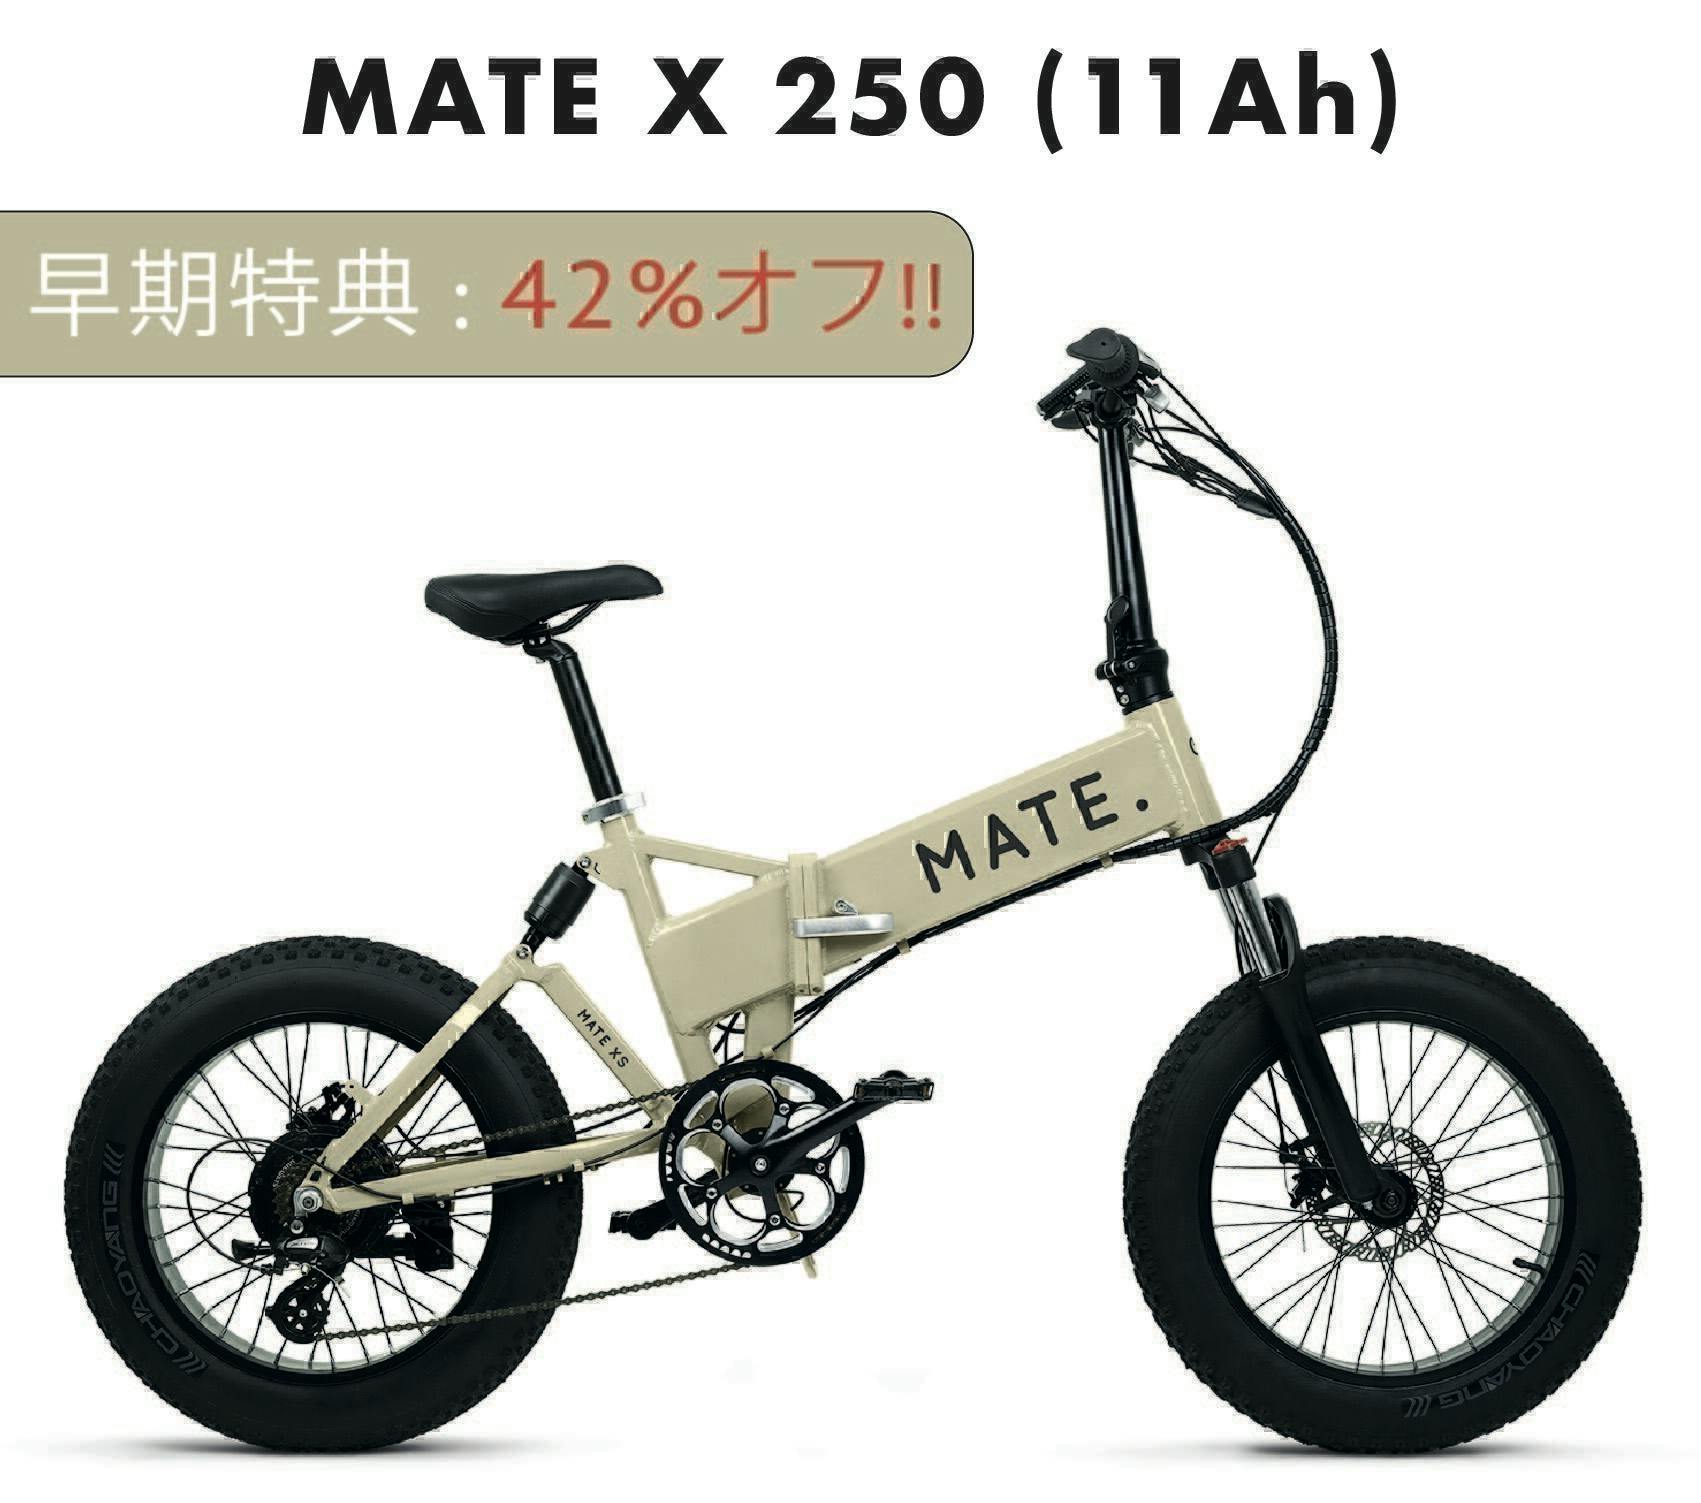 メイトバイク MateBike MateX 純正ホイール 前後 モーター付パーツ